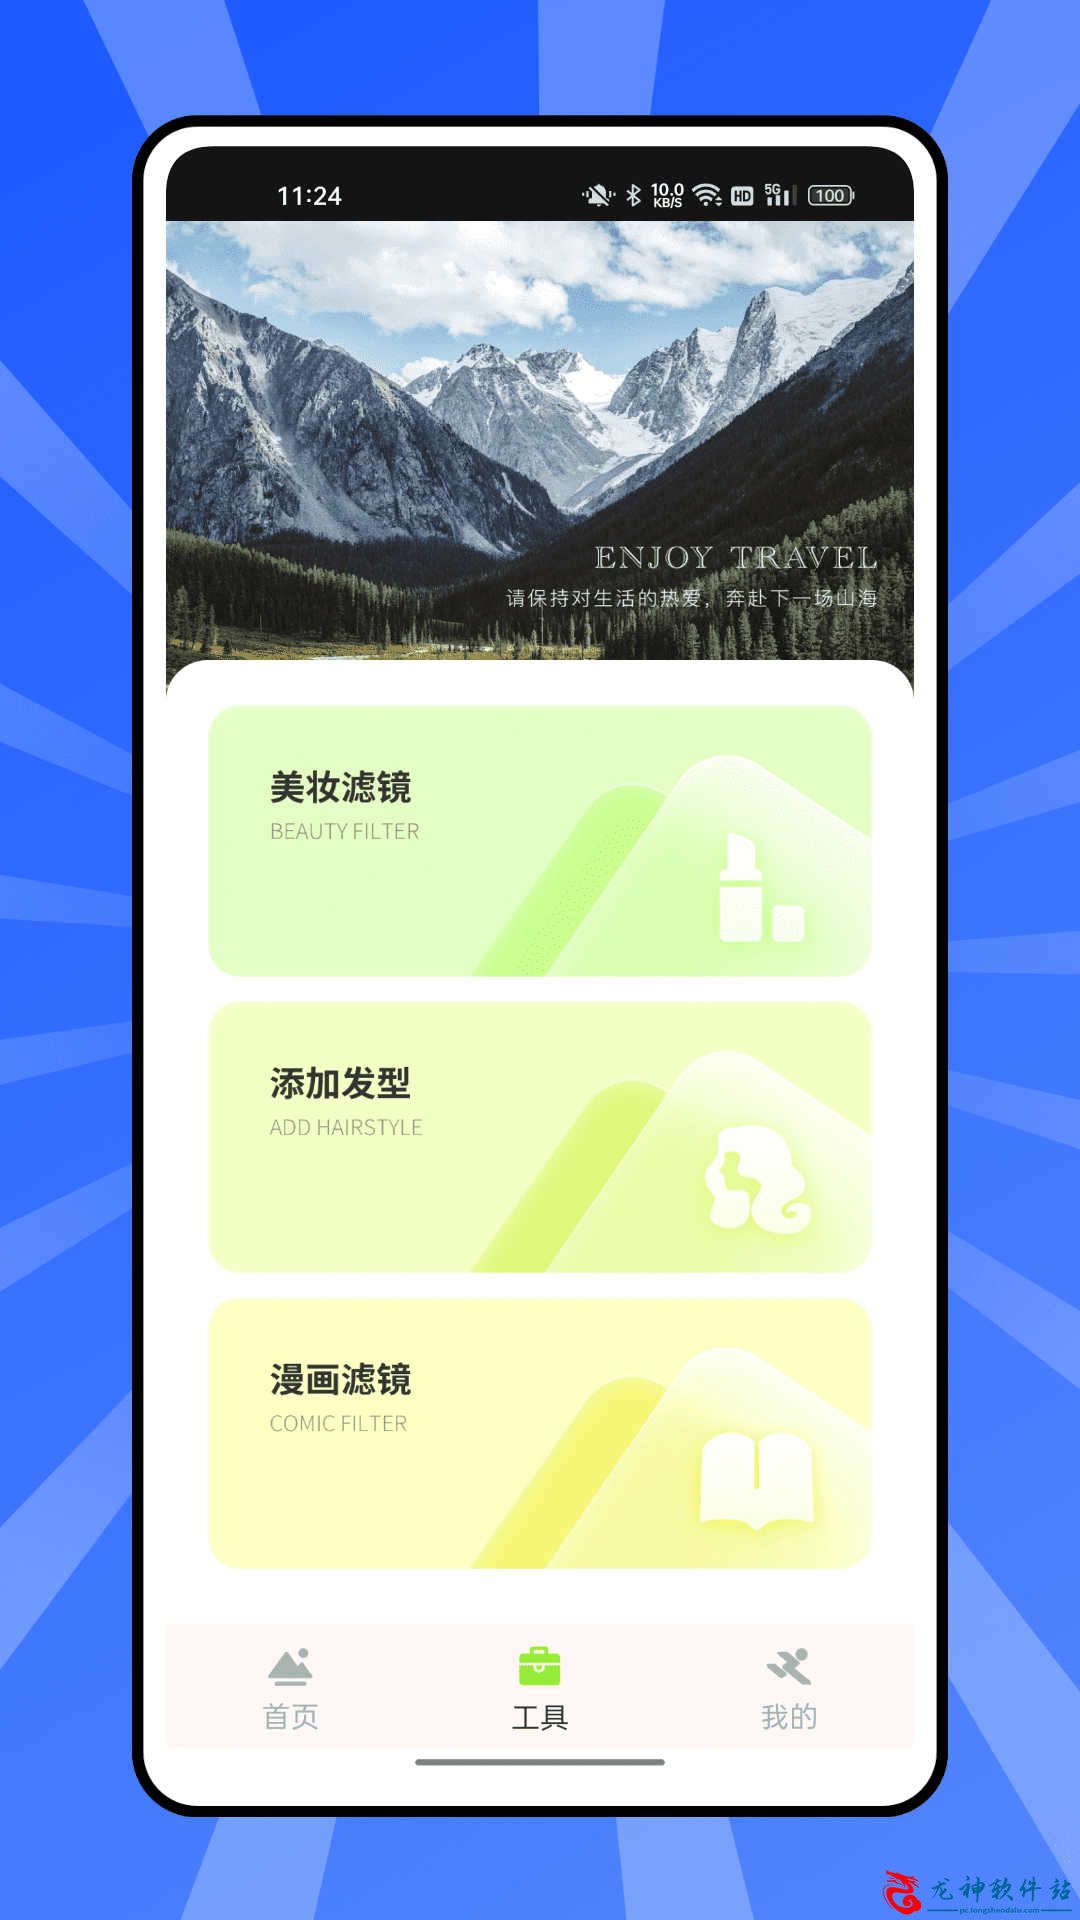 熊猫爱旅行向导app安卓版